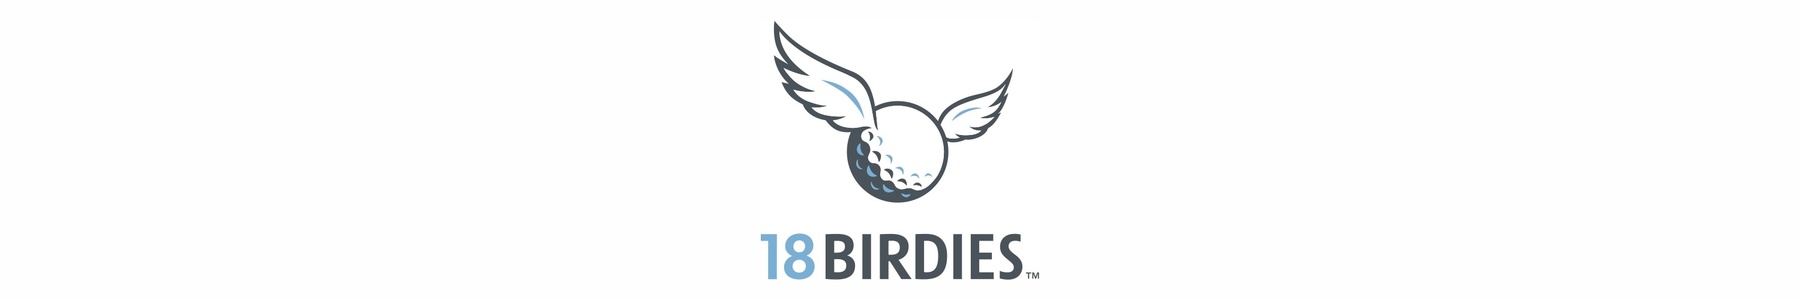 18 Birdies logo-2